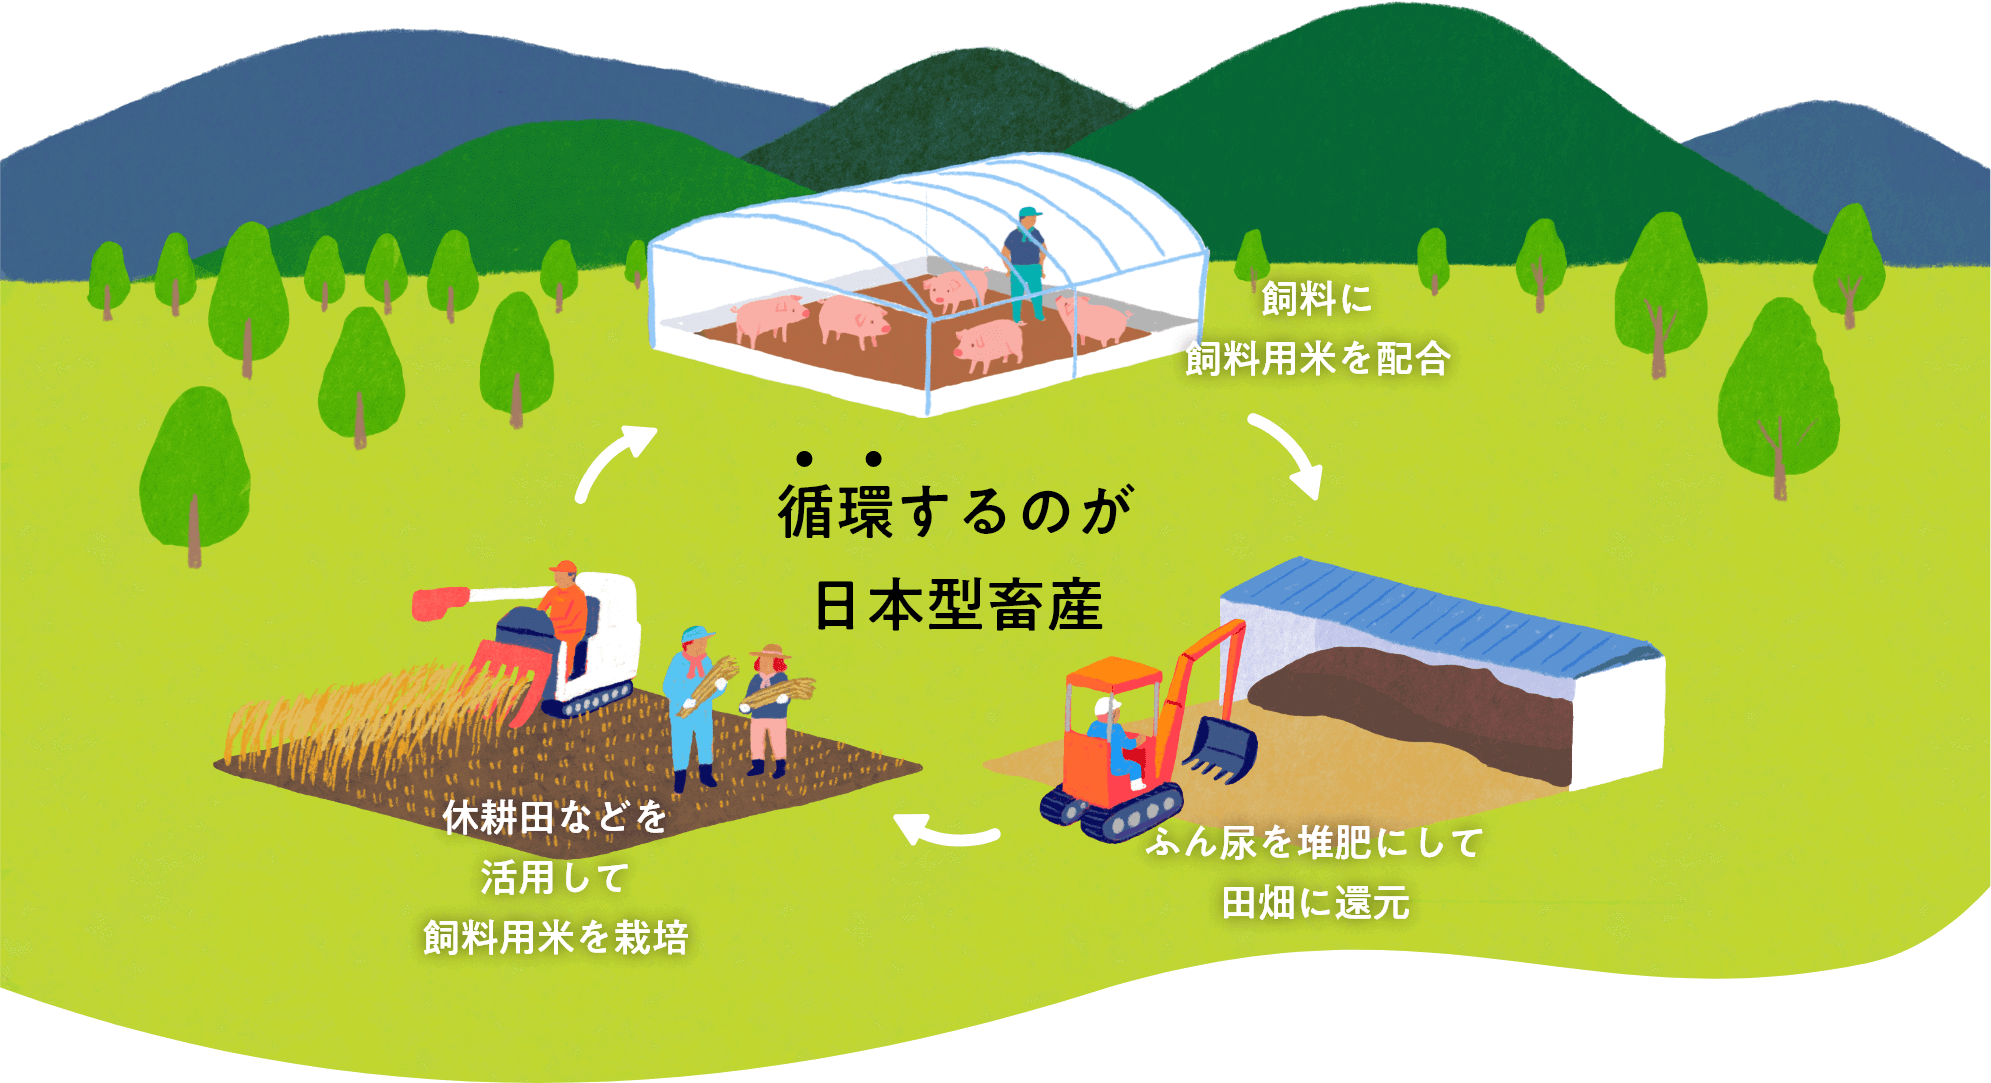 休耕田などを活用して飼料用米を栽培し、生産した飼料用米を飼料に配合し、家畜から出たふん尿を堆肥にして田畑に還元させます。こうして循環するのが、日本型畜産です。